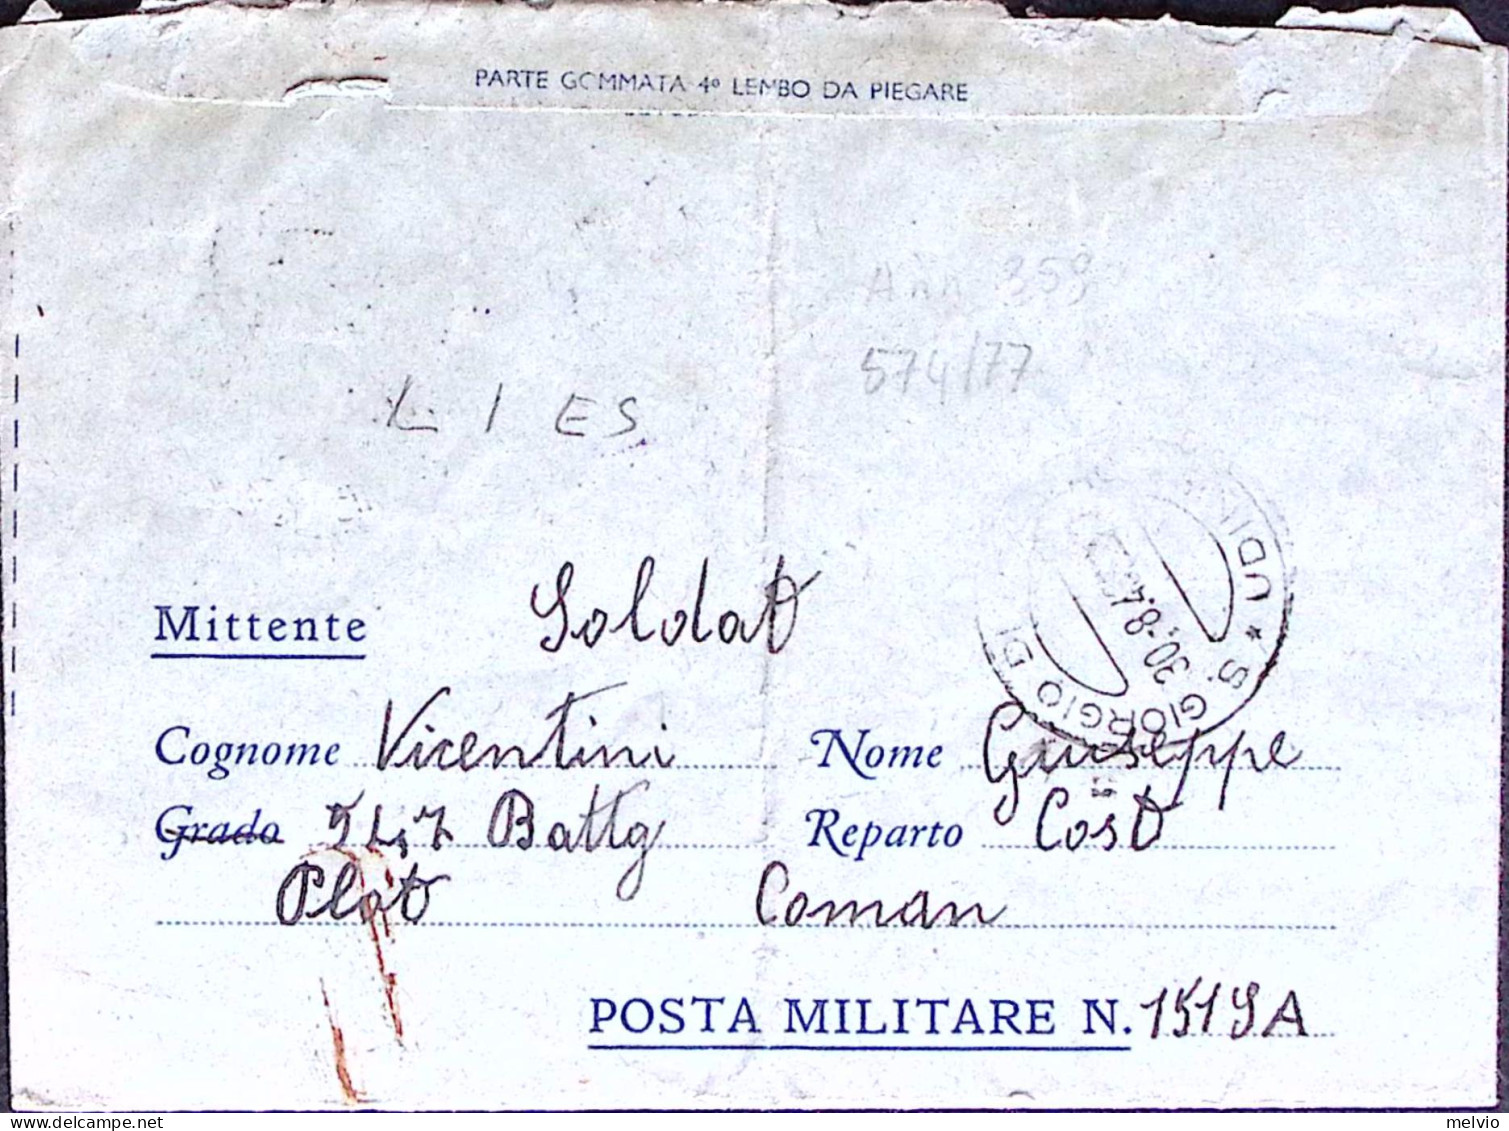 1943-Posta Militare/n.151 sez.A C.2 (21.8 cat.Marchese p.ti 10) su biglietto fra